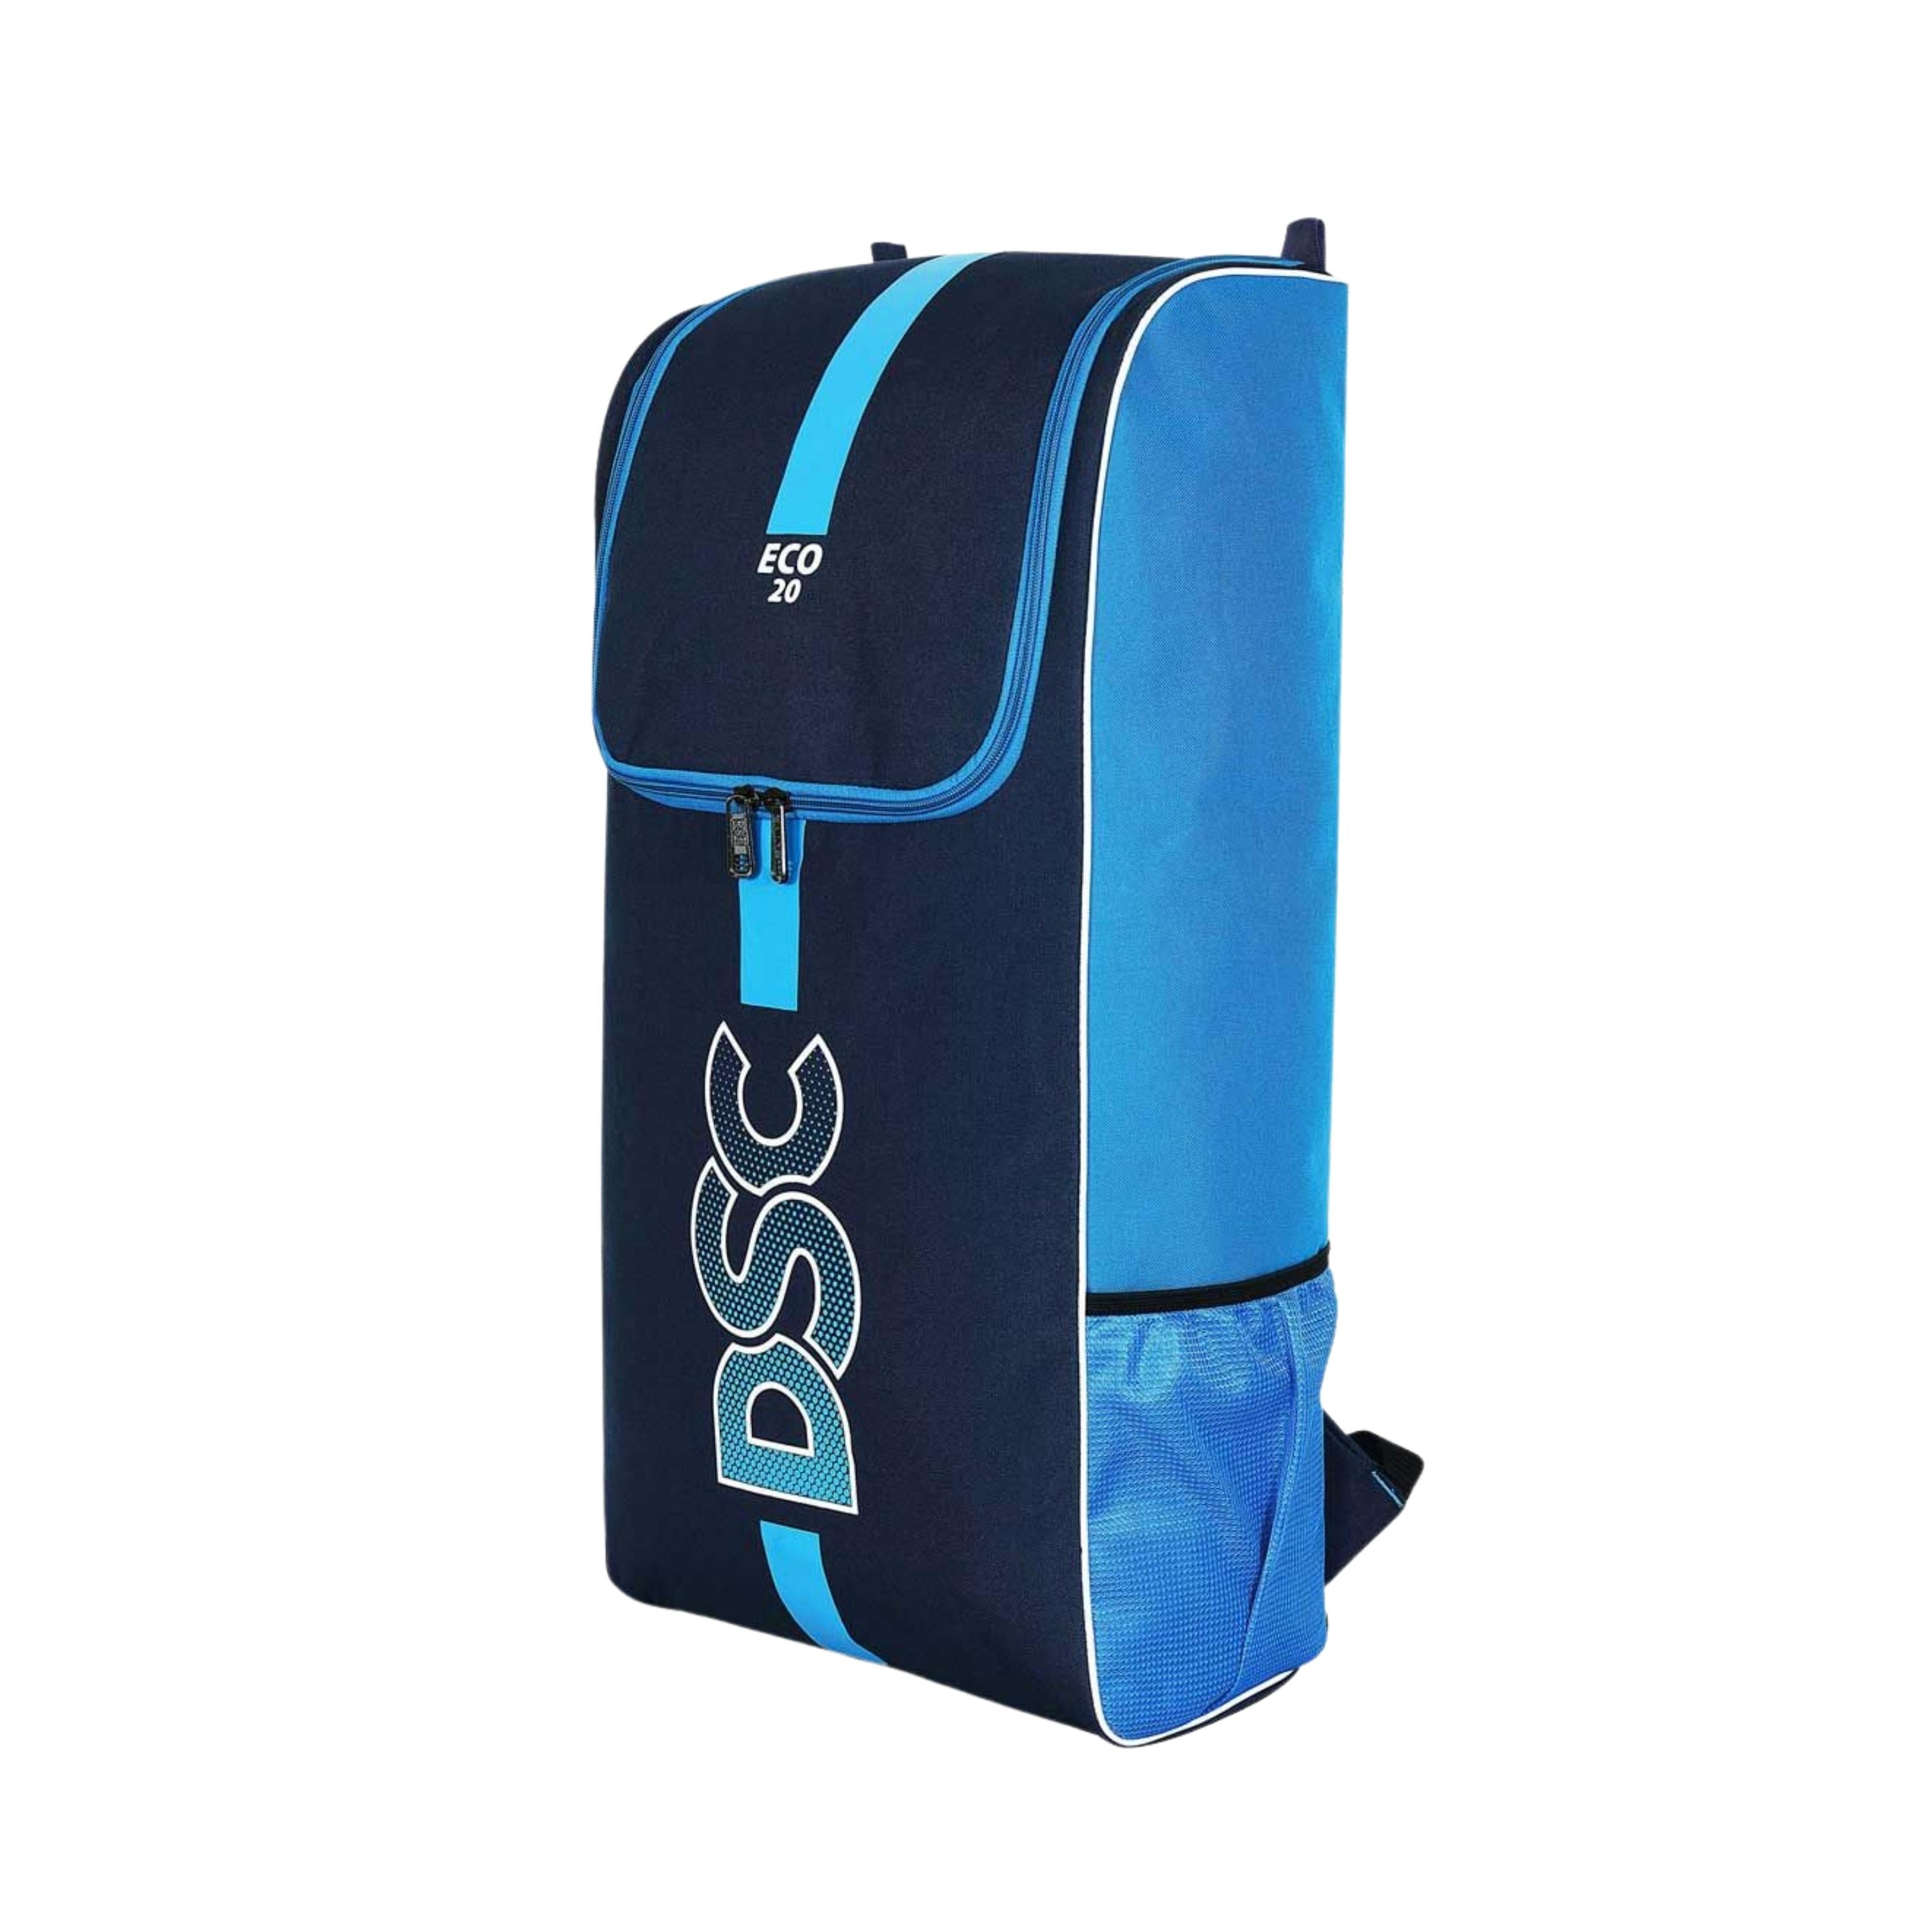 DSC ECO 20 Kit Bag Backpack